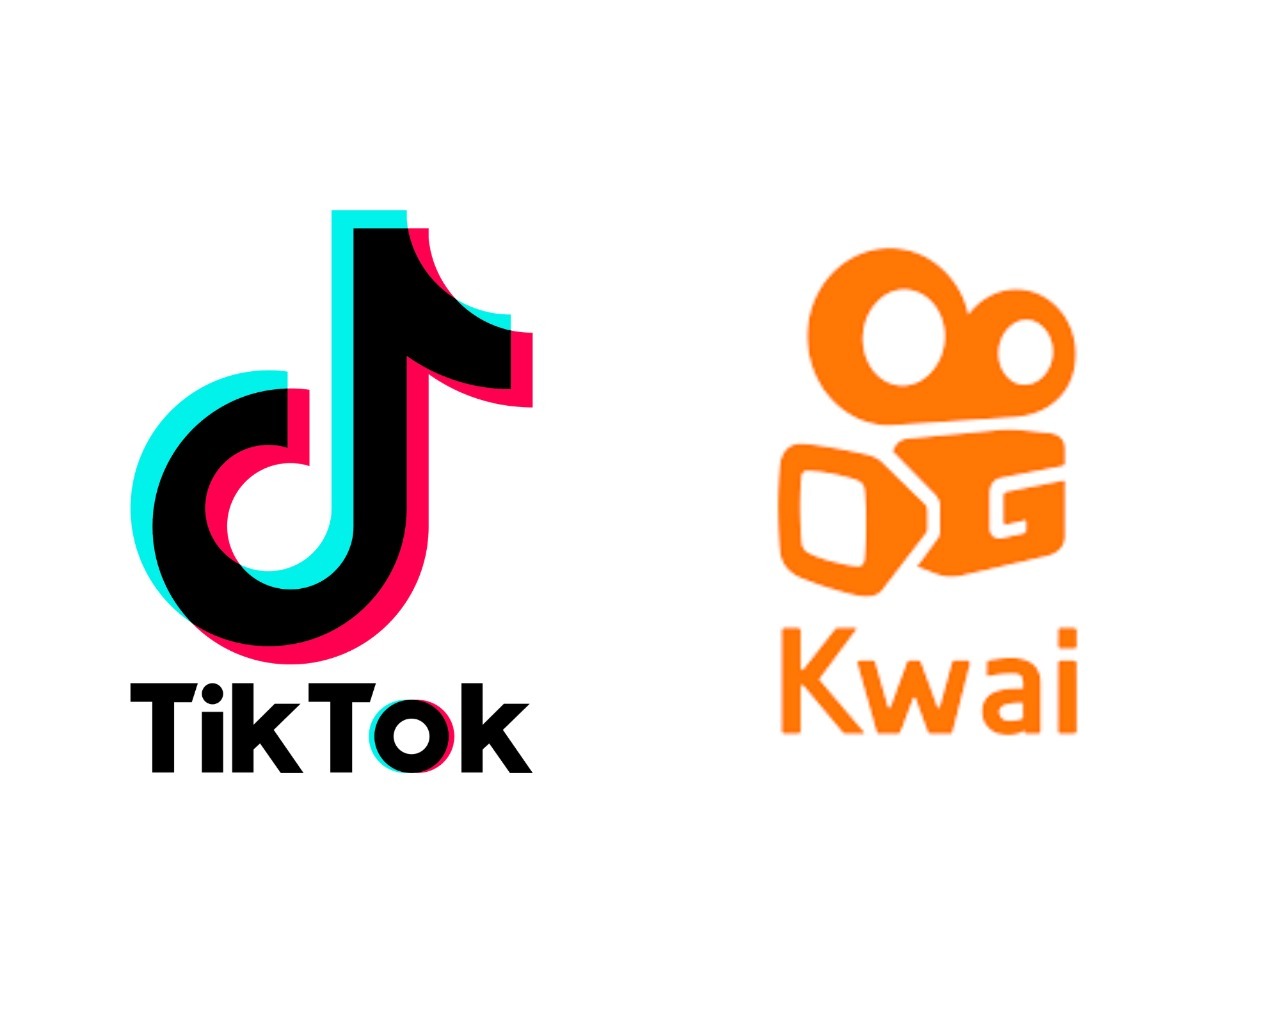 Kwai: saiba tudo sobre o principal concorrente do TikTok